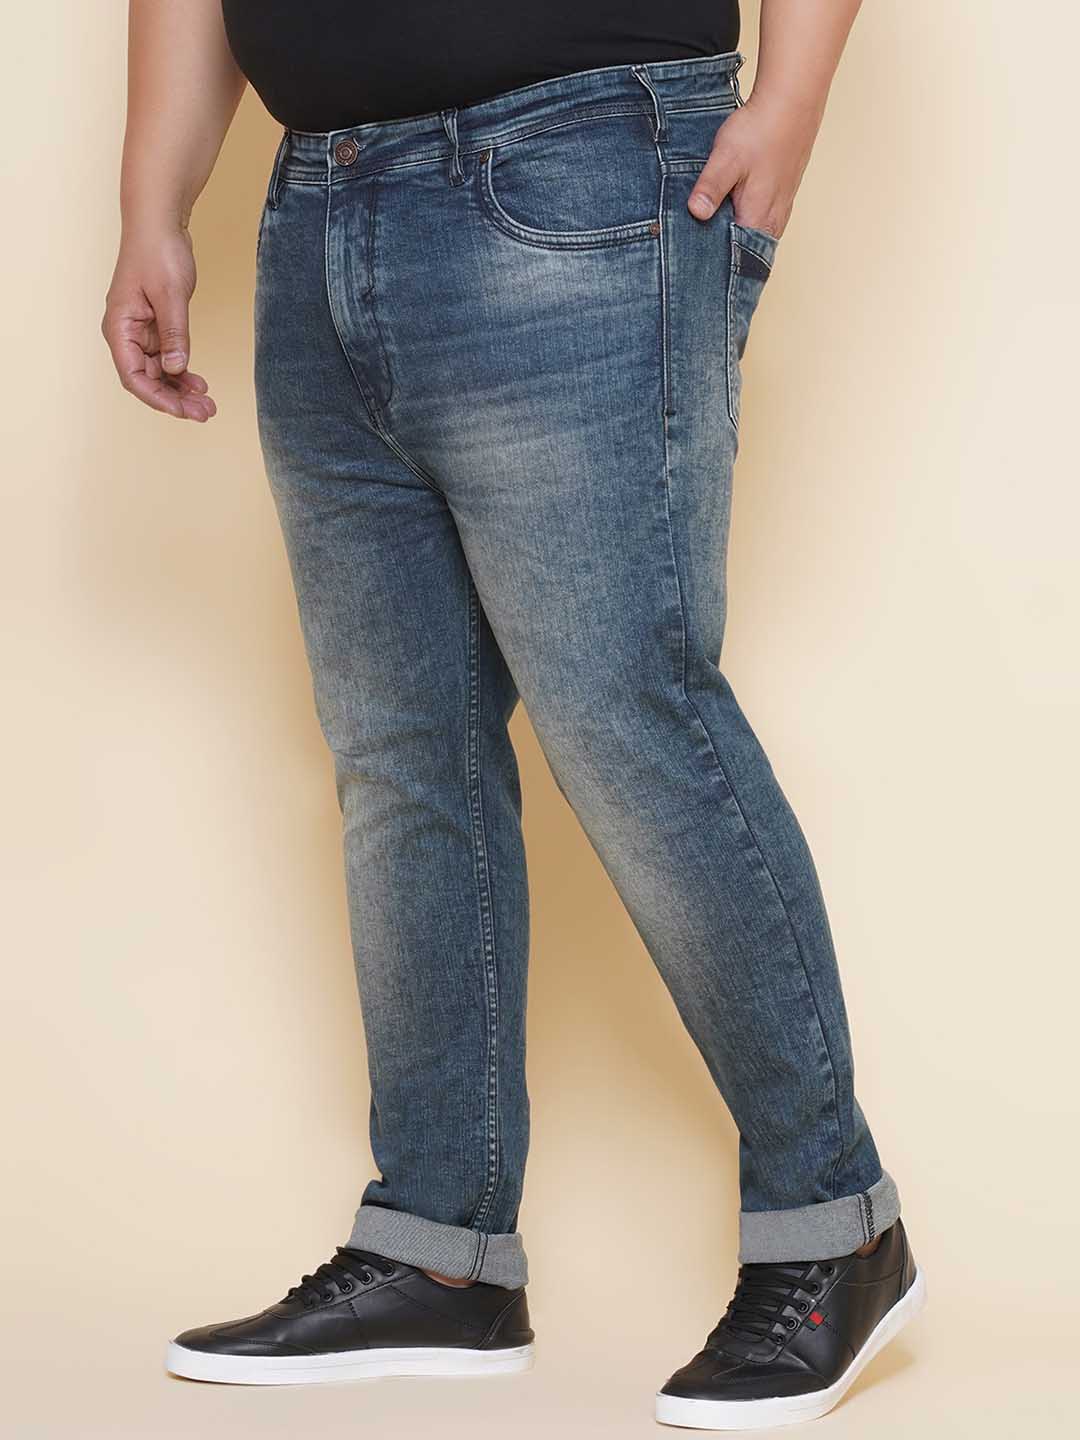 bottomwear/jeans/EJPJ25139/ejpj25139-4.jpg